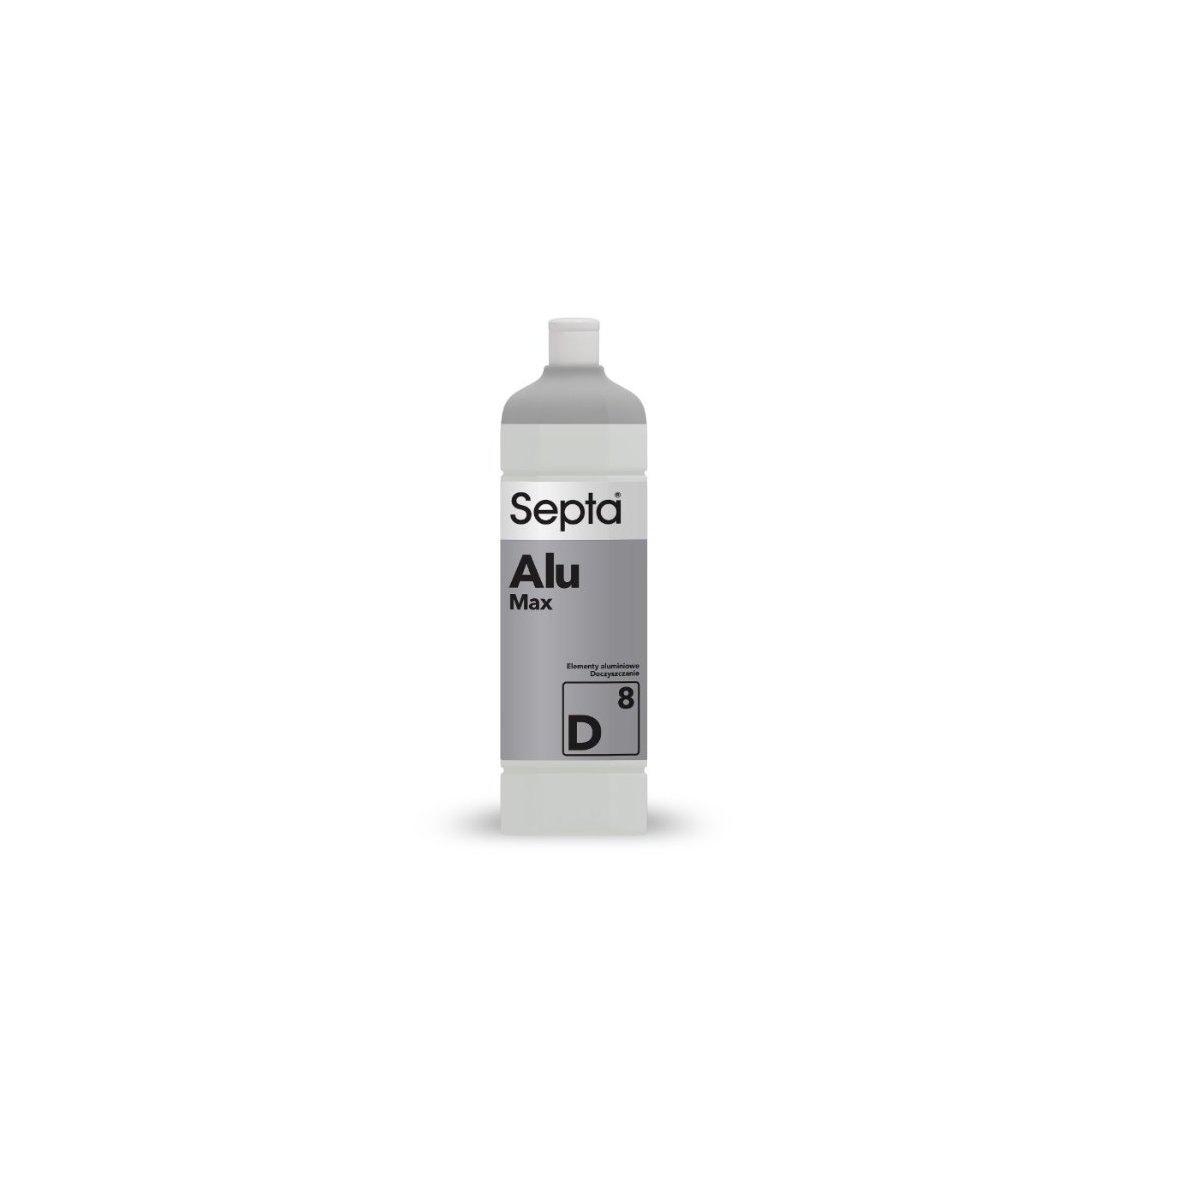 Septa Alu Max D8 kwaśny płyn do doczyszczania felg aluminiwych